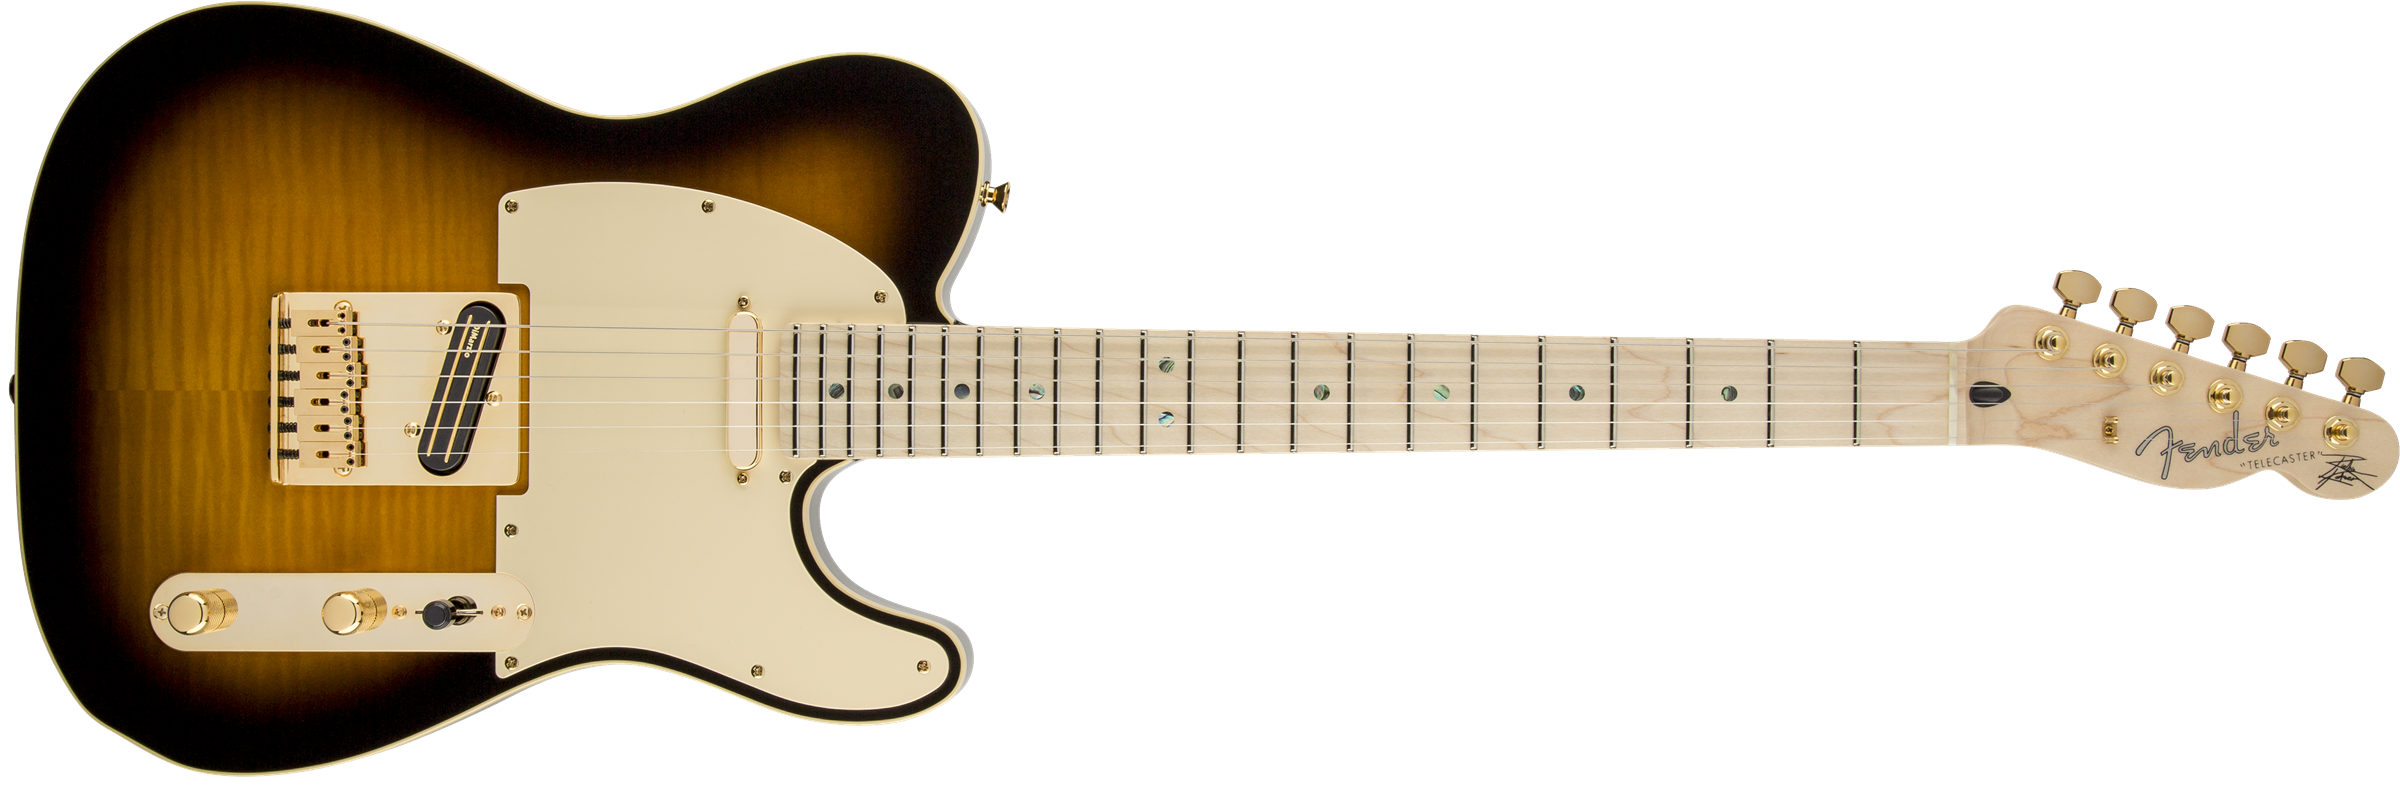 Fender Telecaster Richie Kotzen (jap, Mn) - Brown Sunburst - E-Gitarre in Teleform - Variation 1